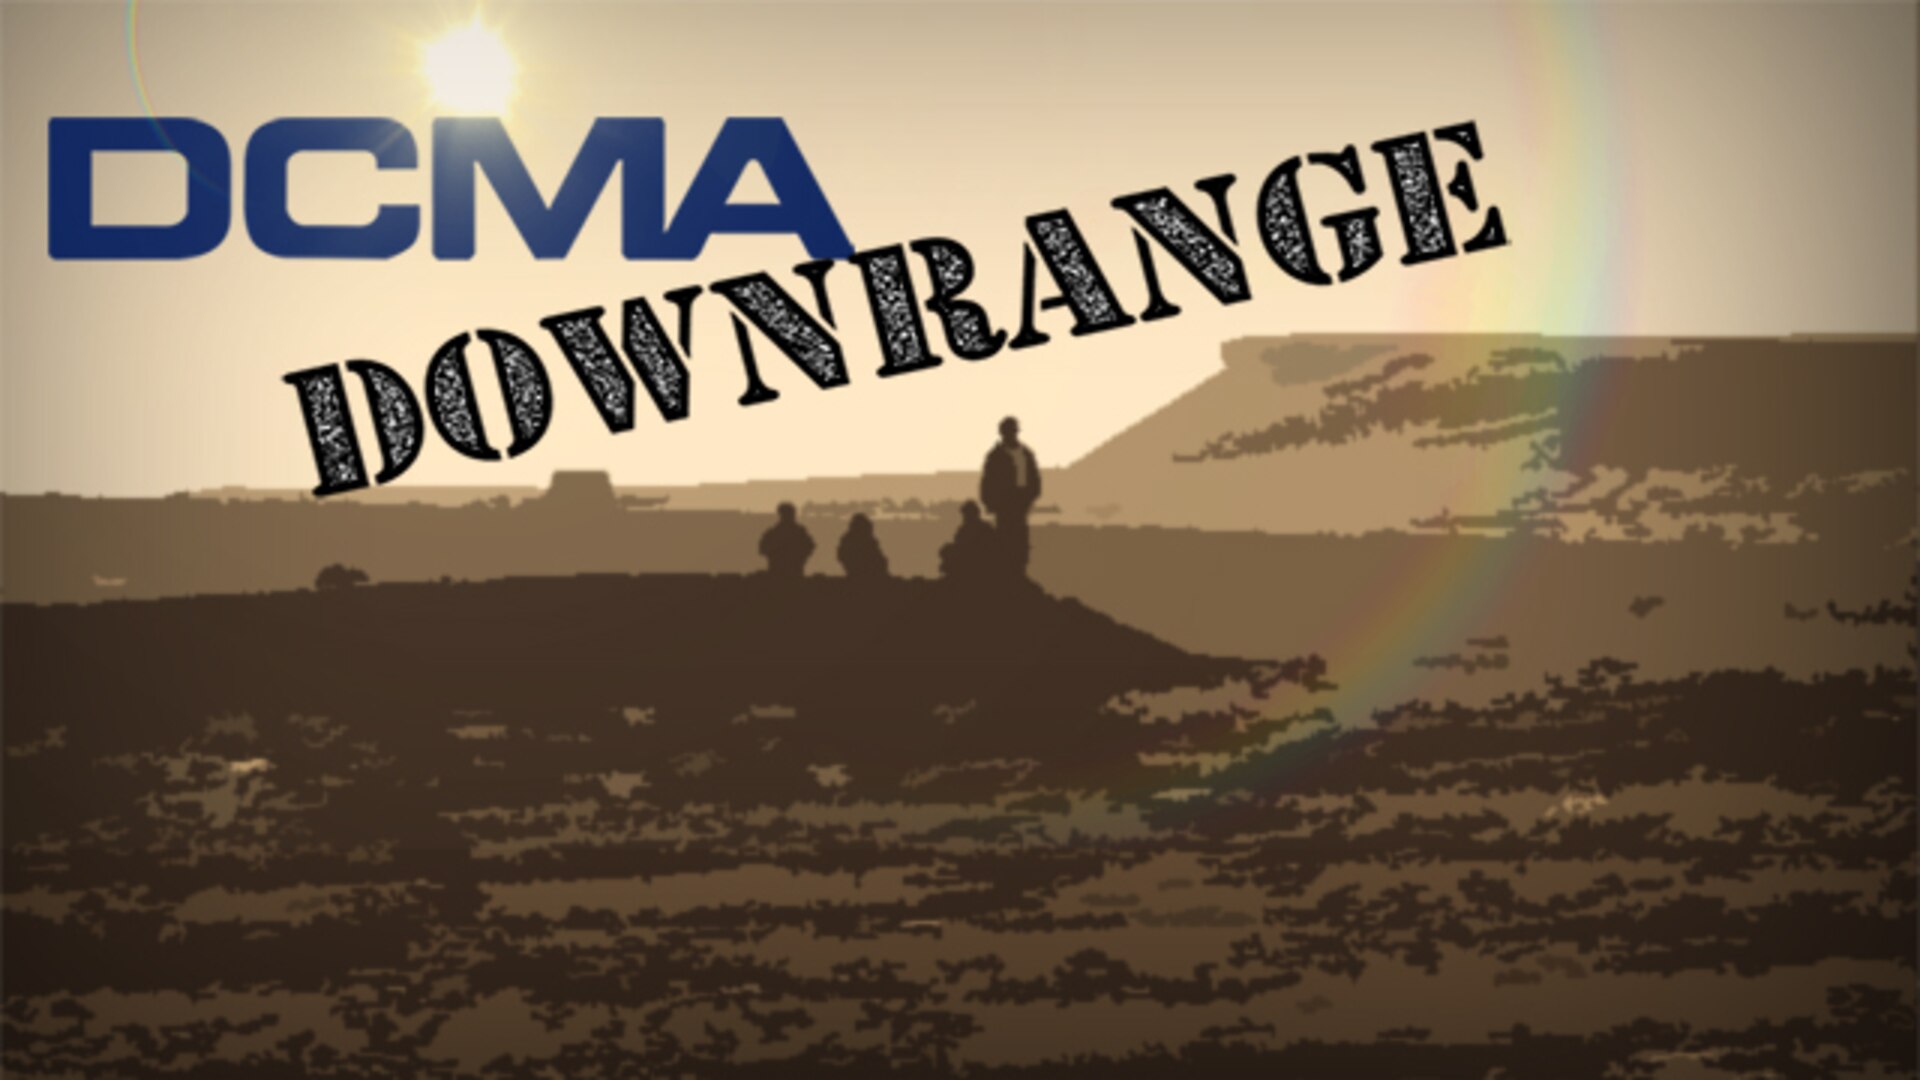 DCMA Downrange. (DCMA graphic by Cheryl Jamieson and Elizabeth Szoke)